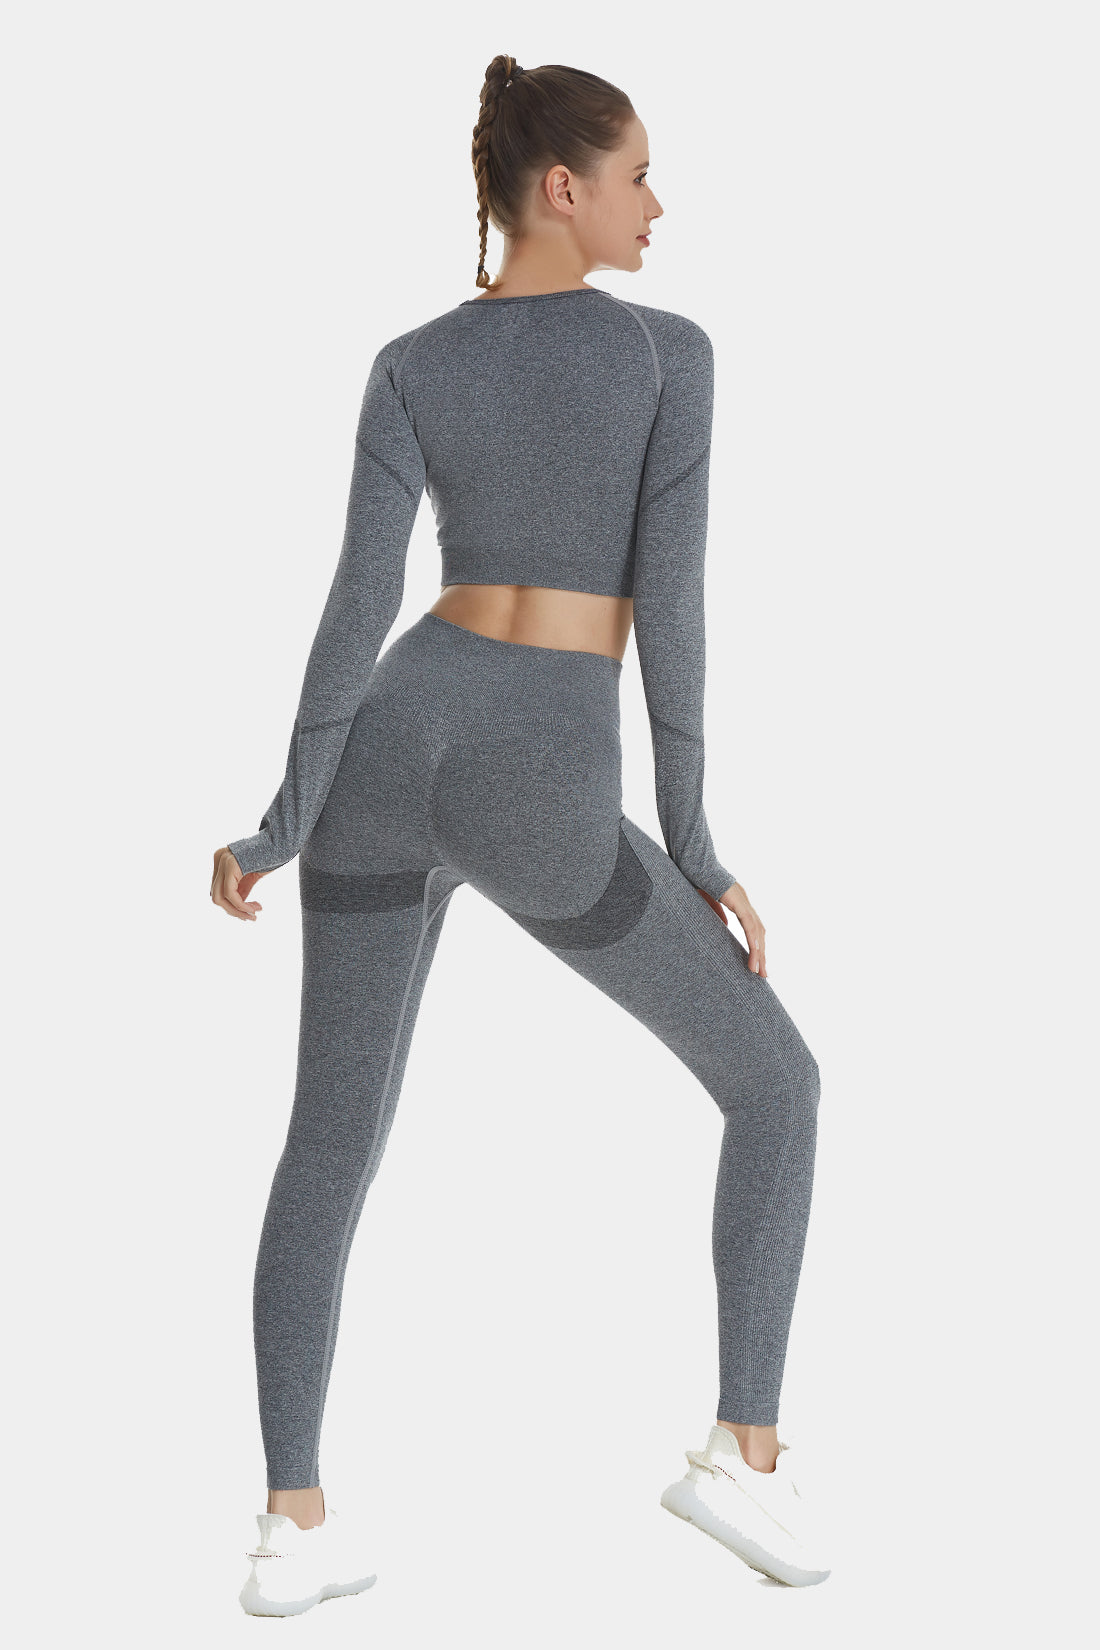 Women 2pcs Seamless Yoga Set Sport Suit Gymwear Workout Clothes Long Sleeve  Gym Crop Top High Waist Leggings Fitness Sports Wea - AliExpress